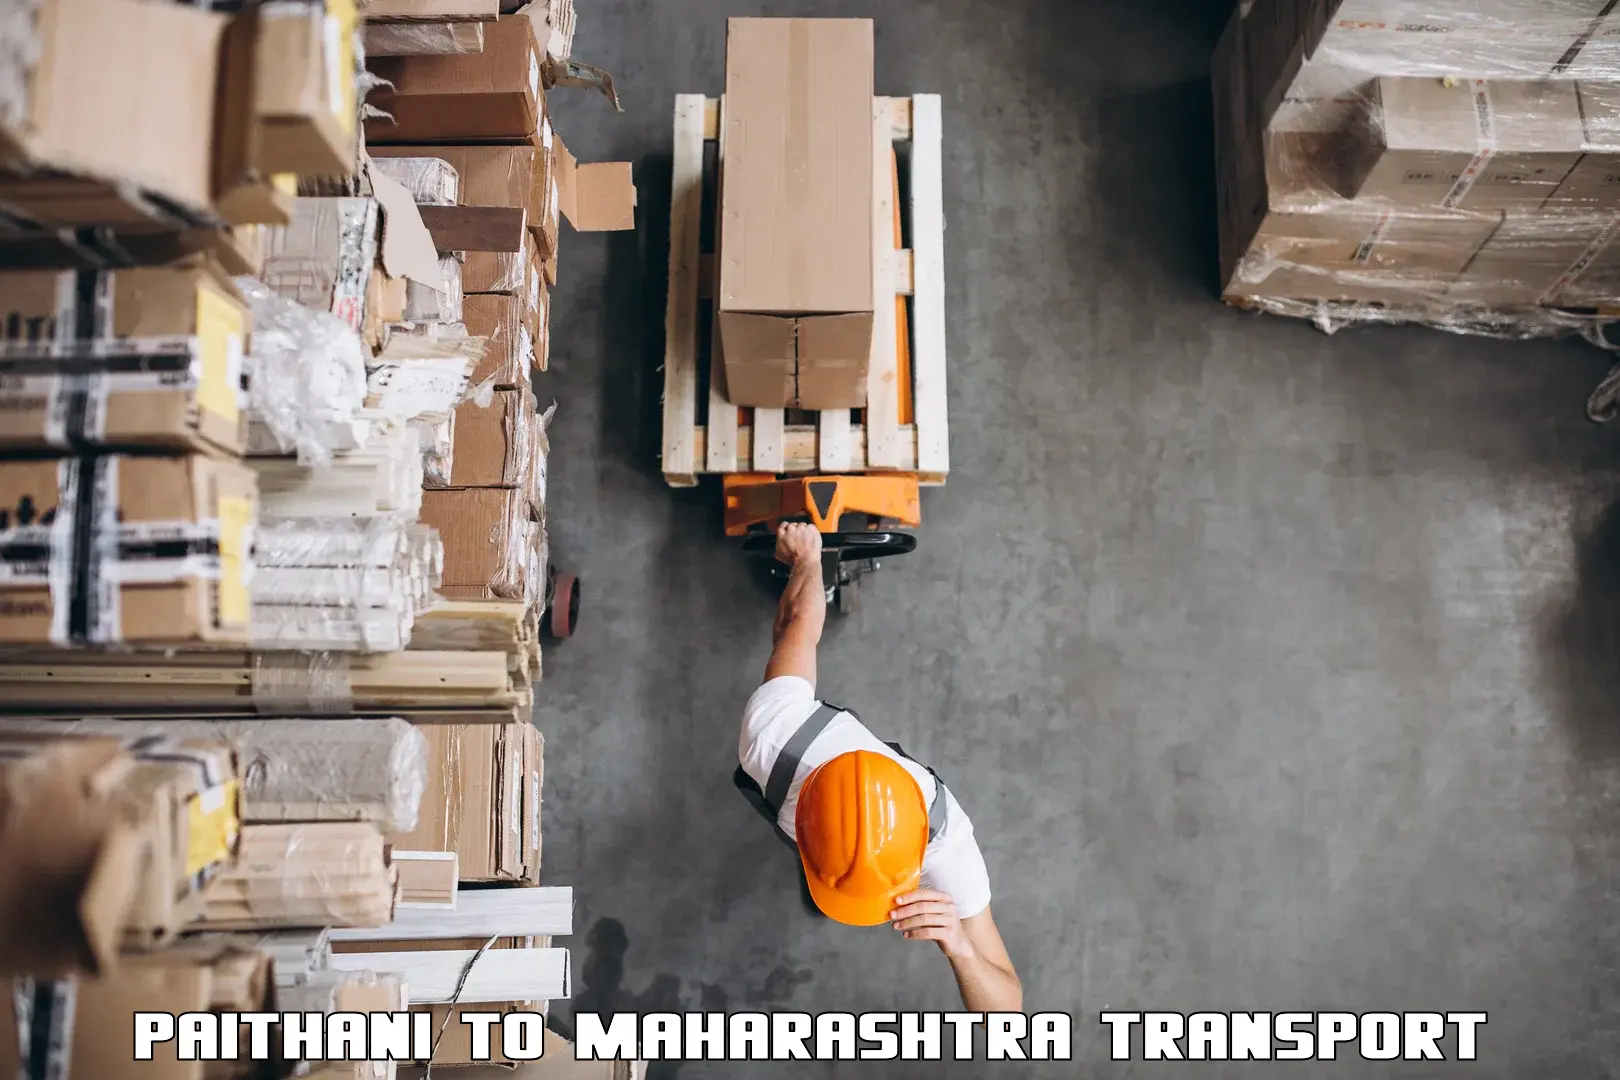 Daily parcel service transport Paithani to Maharashtra